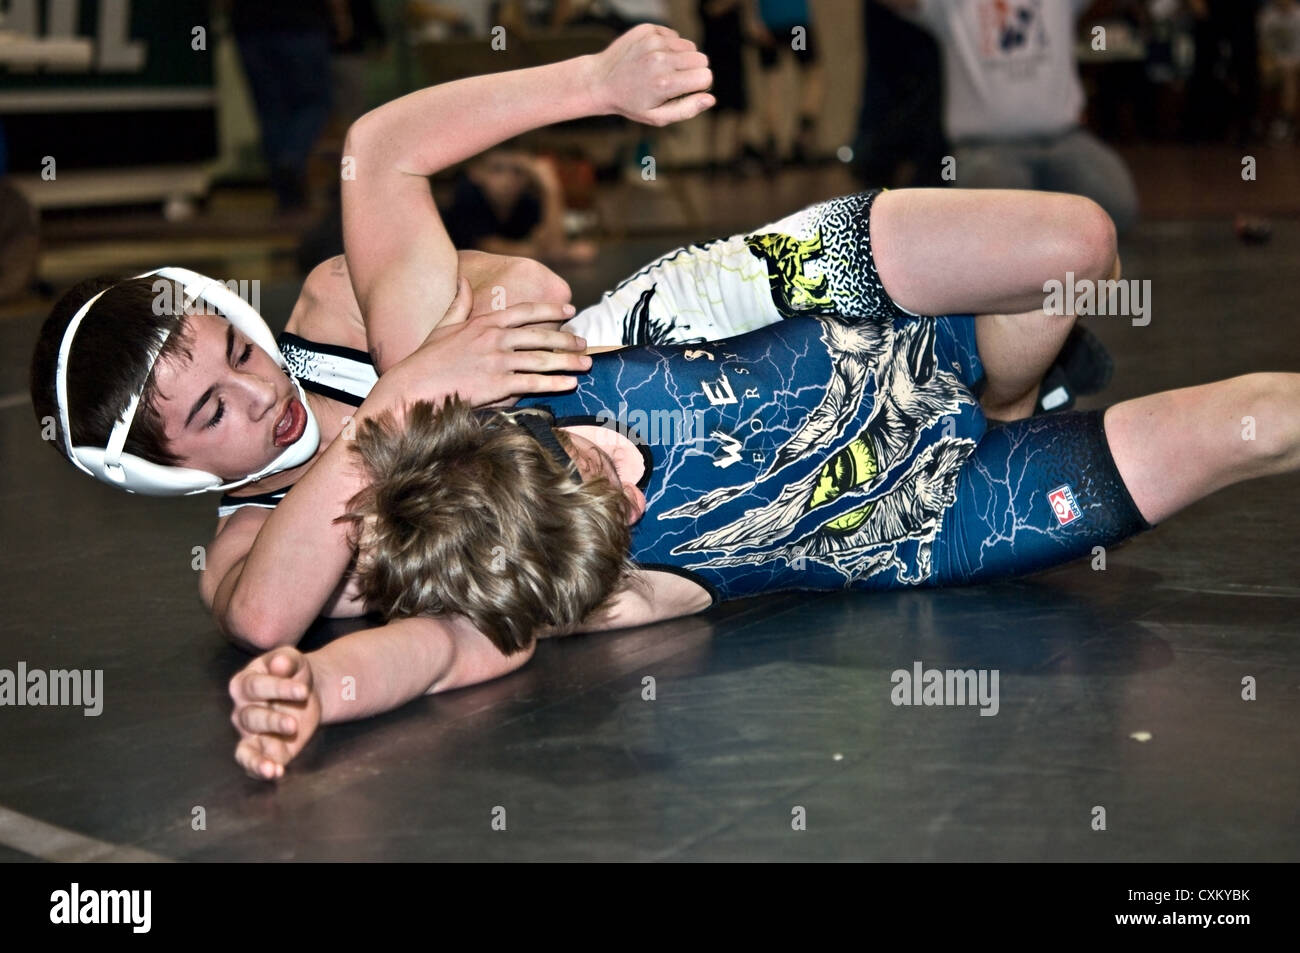 Deux jeunes garçons qui luttent sur le plancher pendant un match de lutte. Banque D'Images